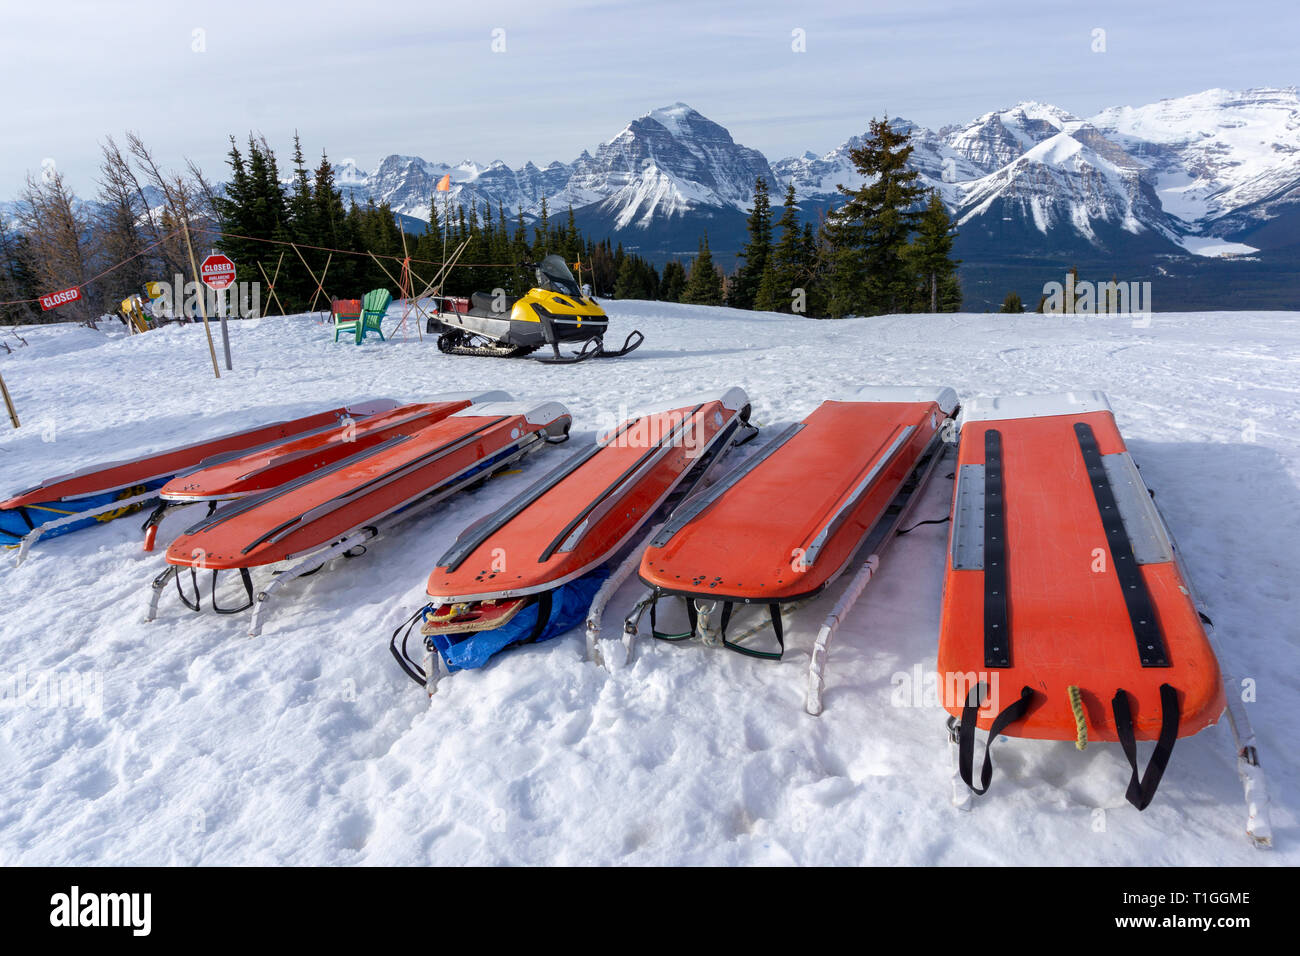 Reihen von Ski Patrol Schlitten oder Rettung Schlitten liegen auf Schnee auf Mountain Ski Resort. Auch als akia oder Rettungsdienst sledg bekannt, ist es durch die Berge verwendet Stockfoto